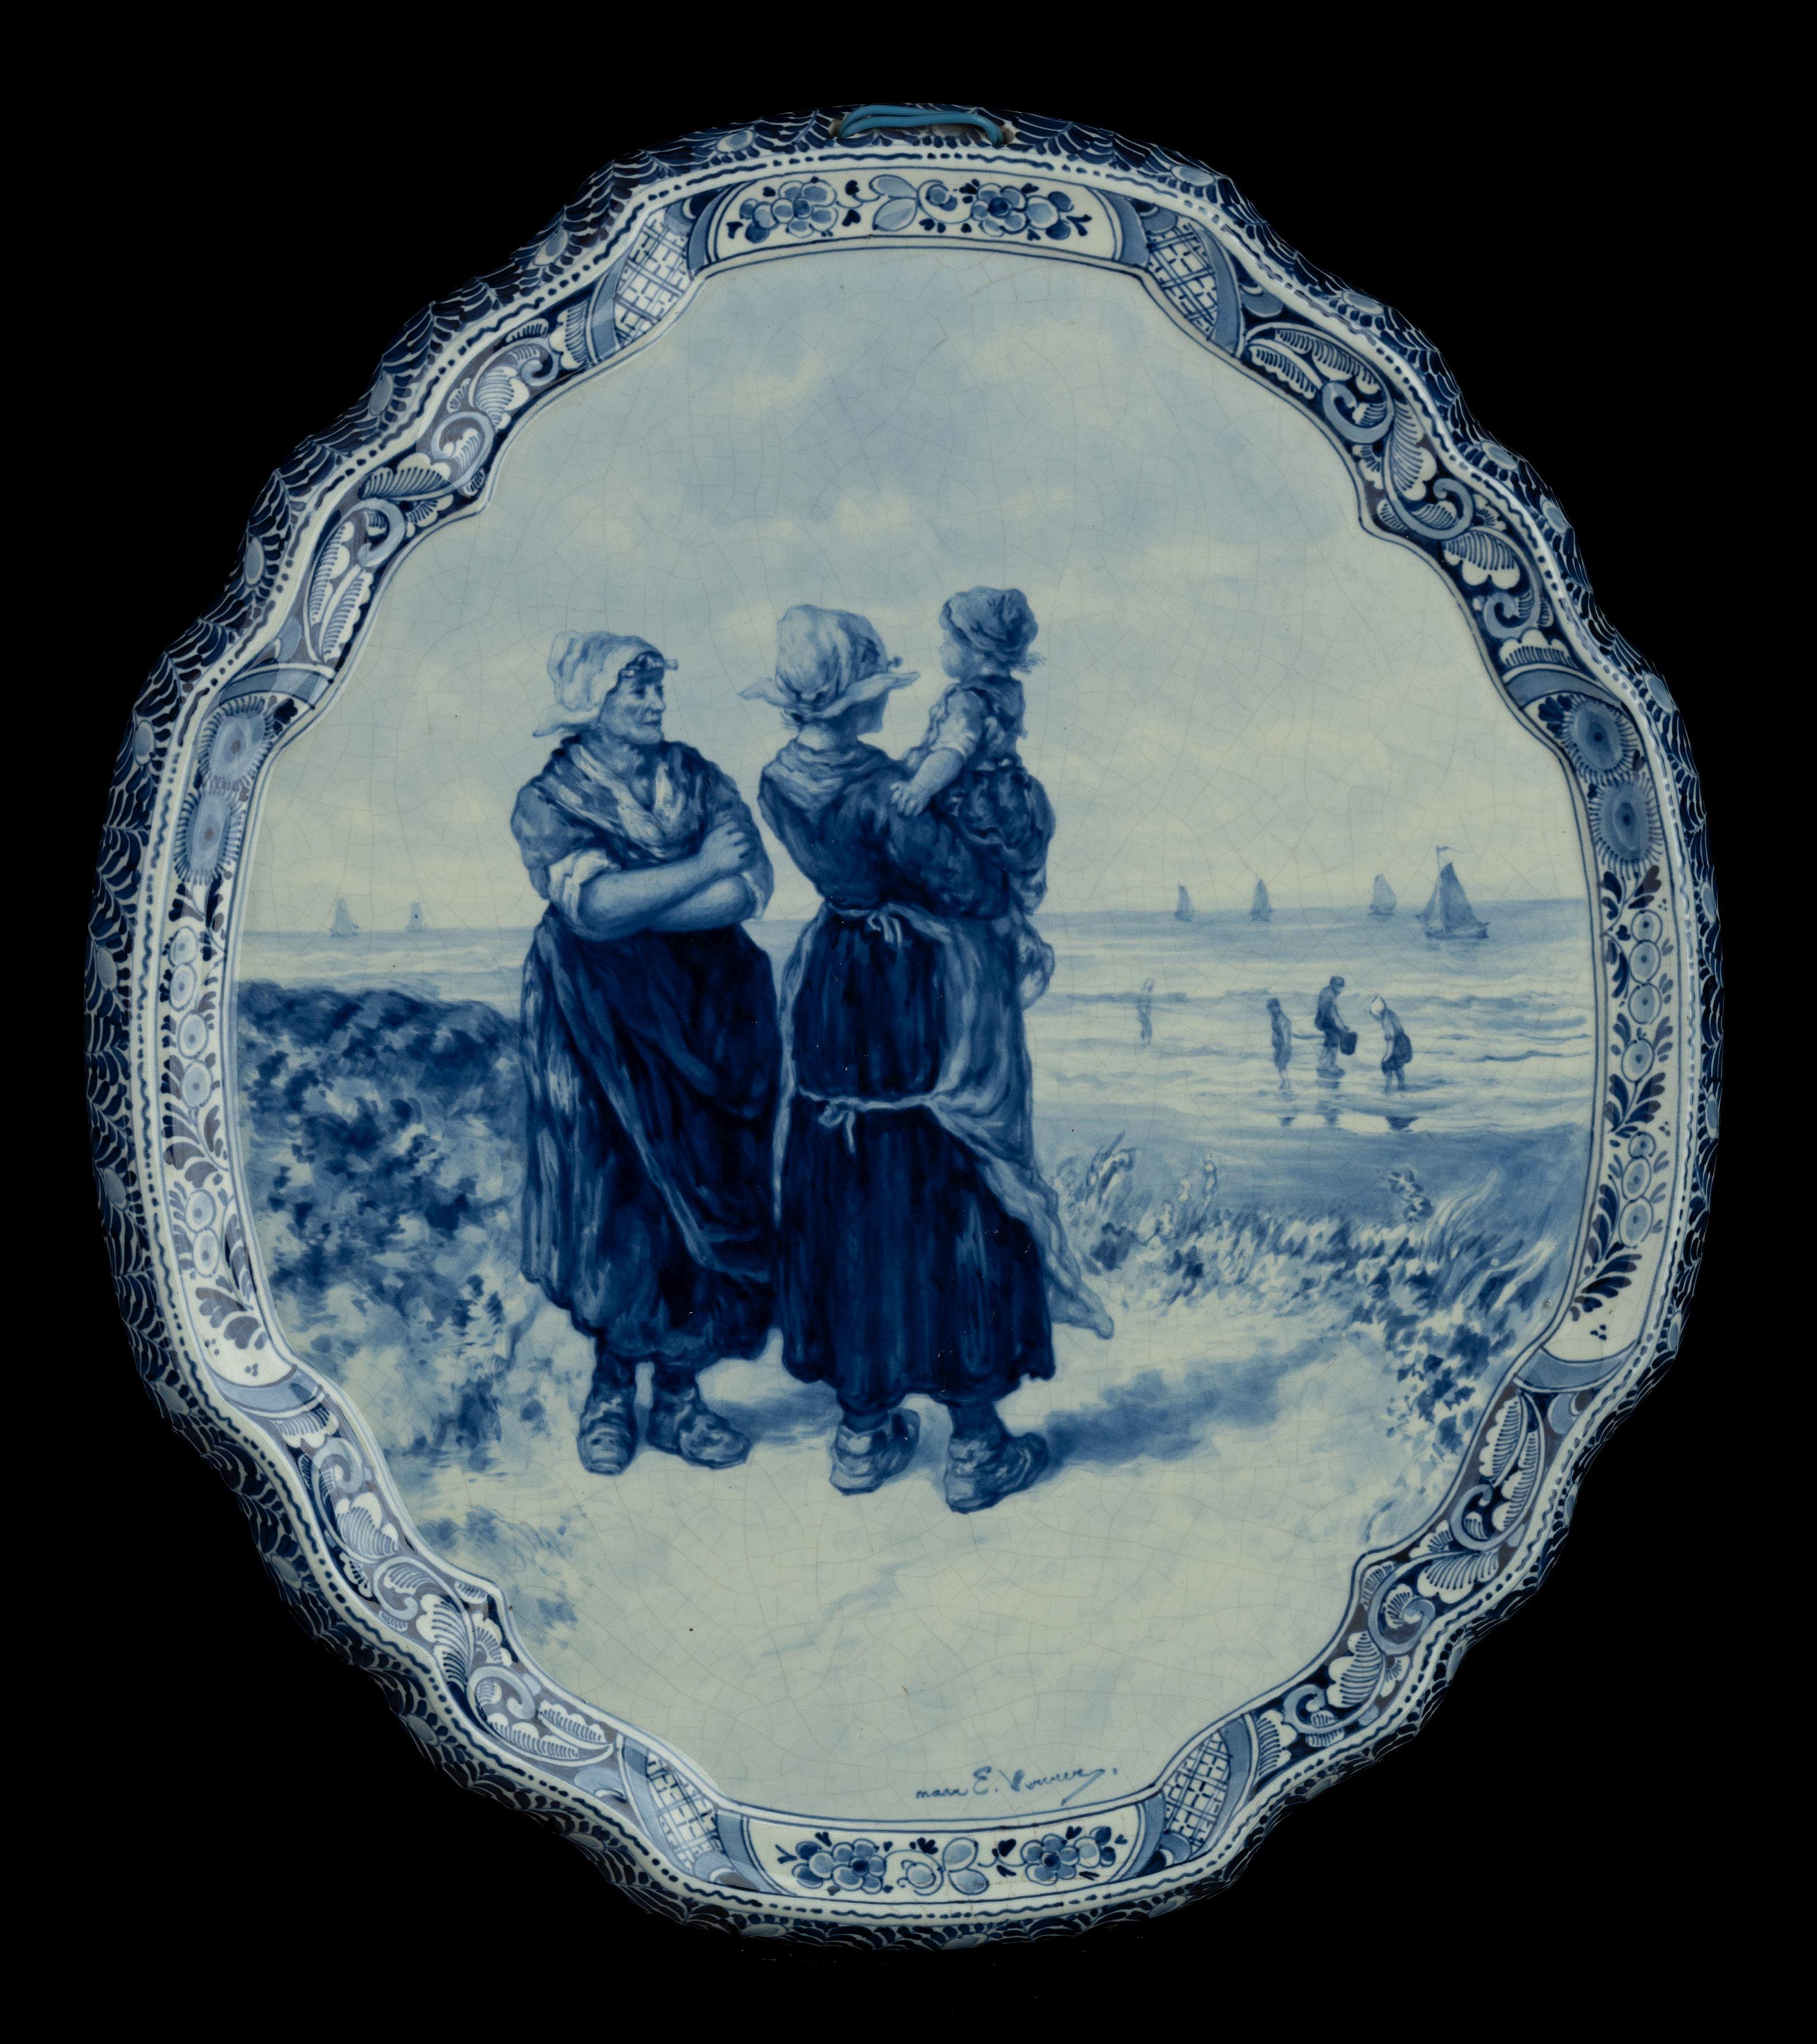 Delft, Porceleyne Fles Applique d'après une peinture d'E. Verveer  fabriqué en 1901

Une applique de Porceleyne Fles delft peinte à la main d'après une peinture d'Elchanon Leonardus Verveer . L'applique est exécutée en bleu de Delft et représente